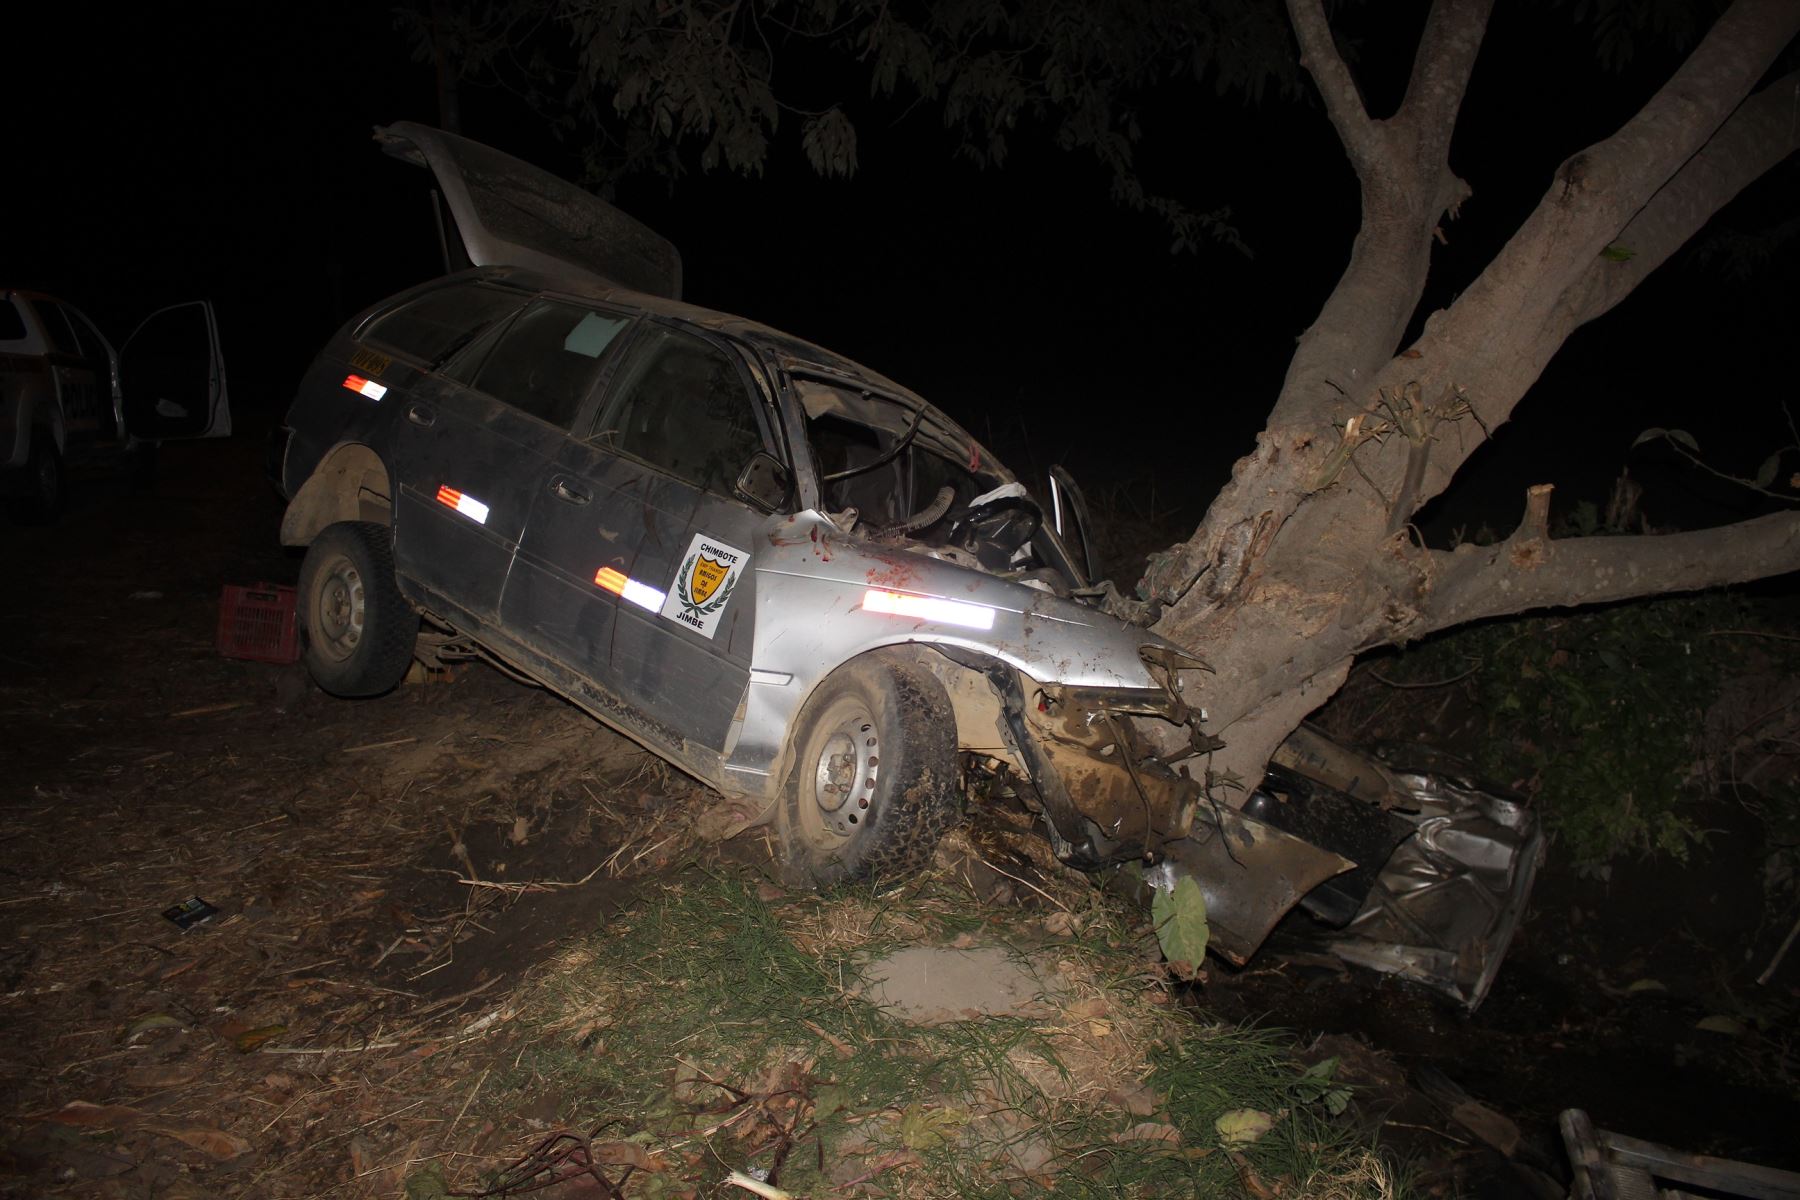 63 personas han muerto en accidentes de tránsito en lo que va del año en Chimbote y otras ciudades de Áncash. ANDINA